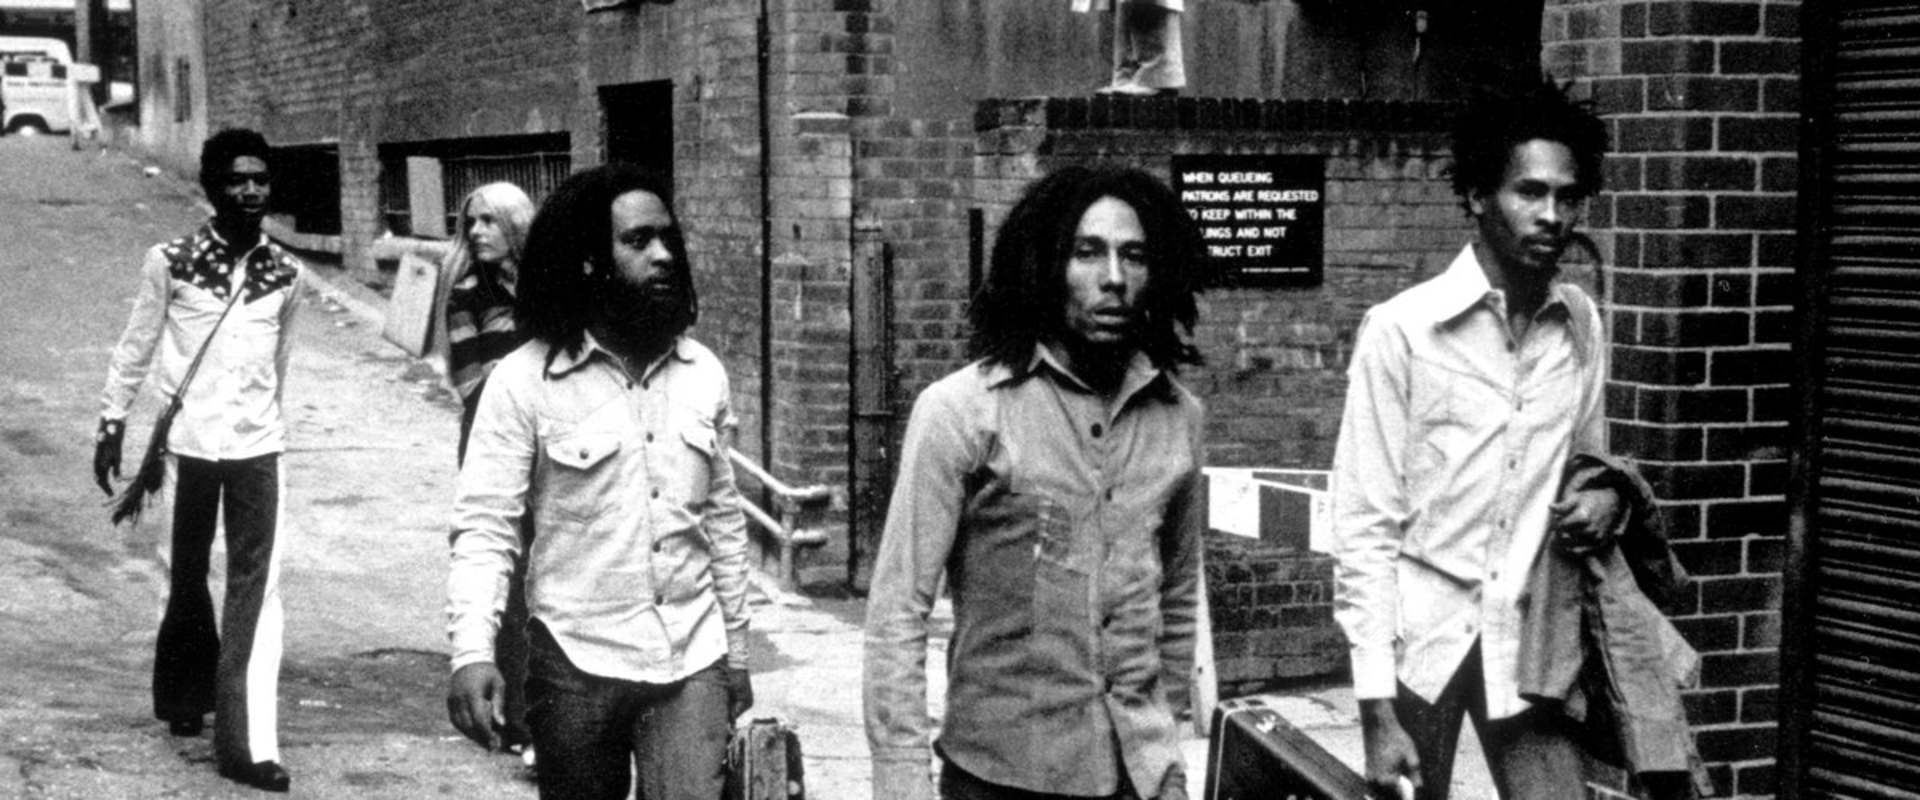 Bob Marley - Freedom Road background 2